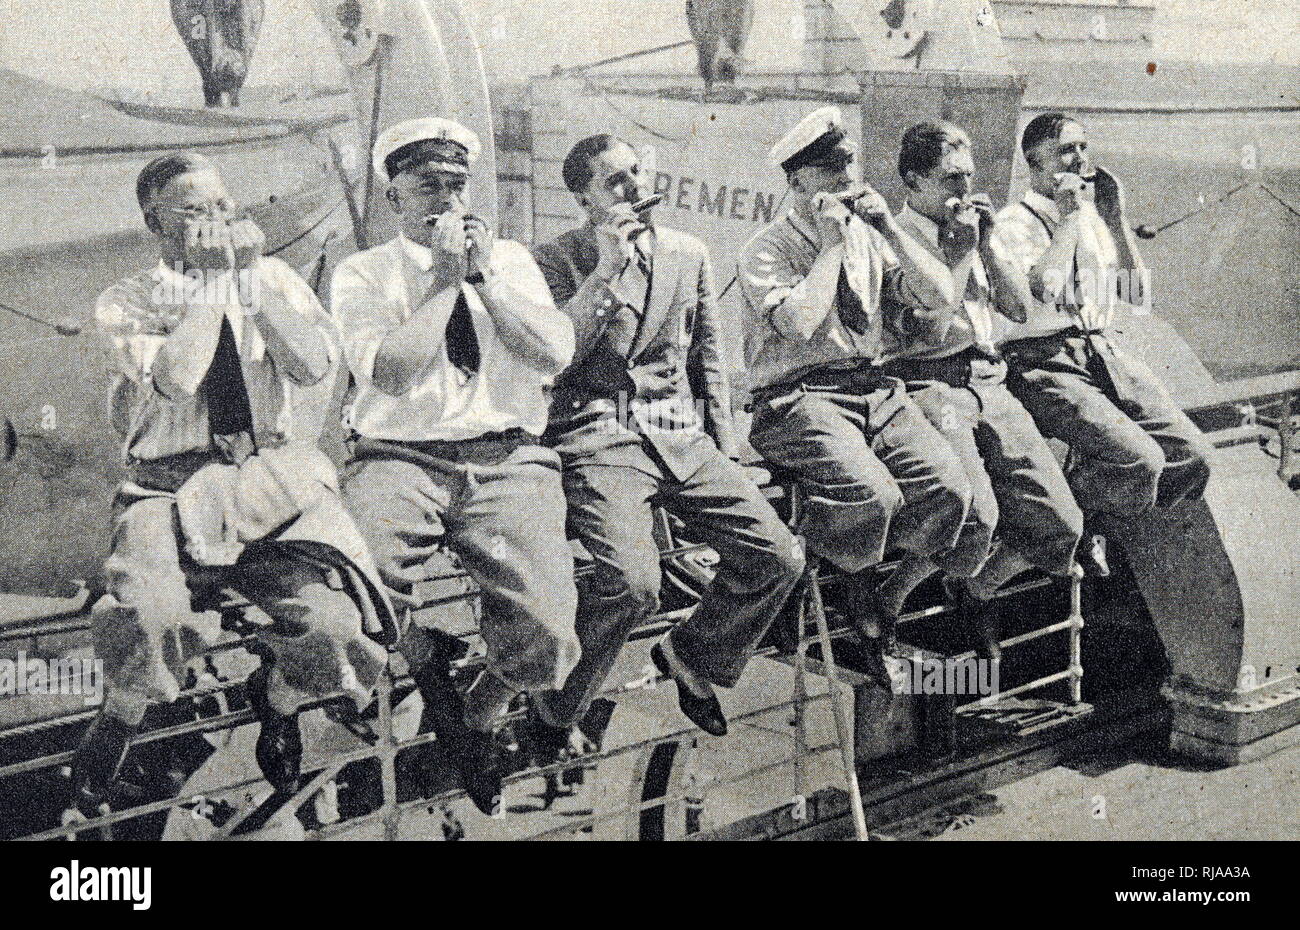 Die deutsche Wasserball Mannschaft für die Olympischen Spiele 1932 in Los Angeles sat Musik zusammen zu spielen. Vom 20. Jahrhundert Stockfoto